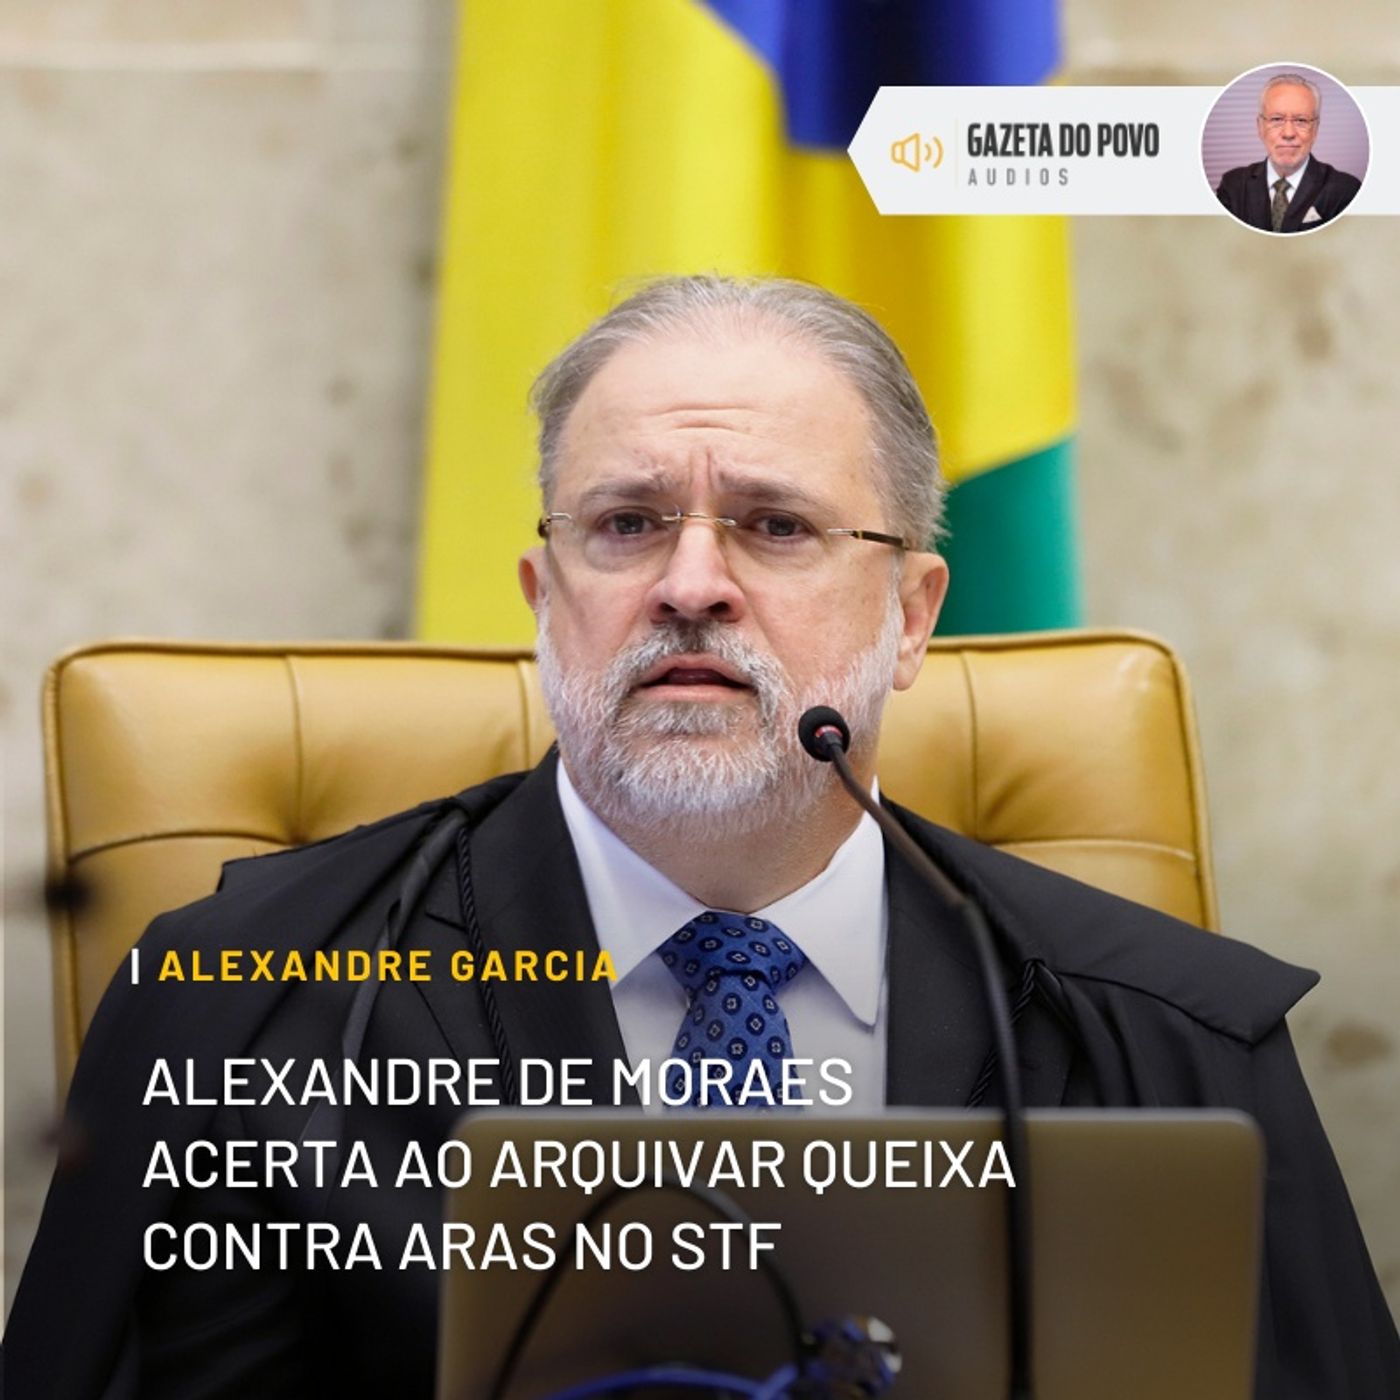 Alexandre de Moraes acerta ao arquivar queixa contra Aras no STF